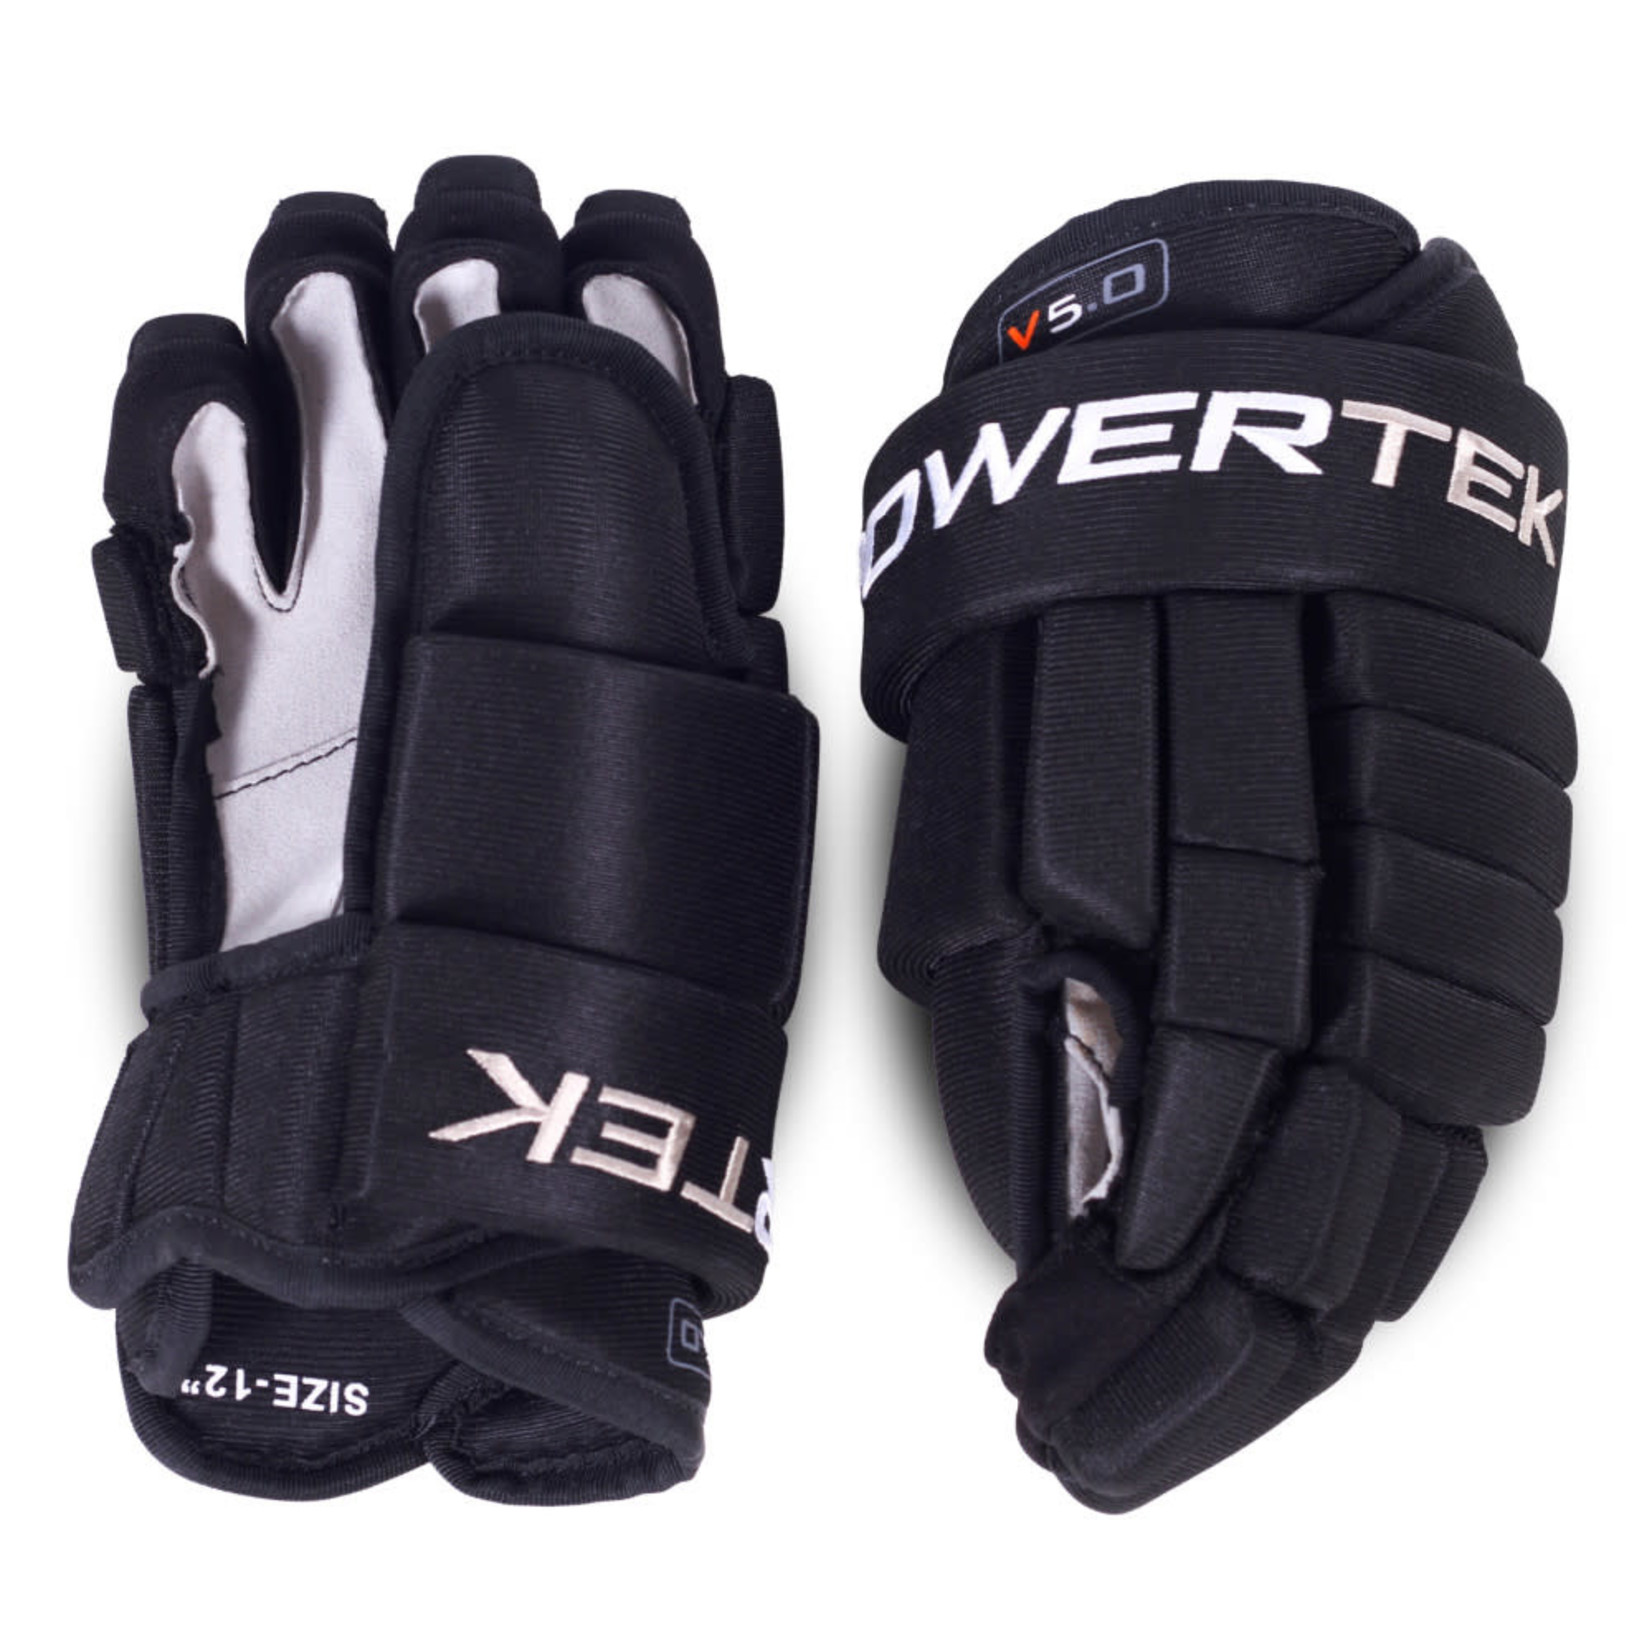 Powertek Powertek V5.0 - Hockey Gloves Junior